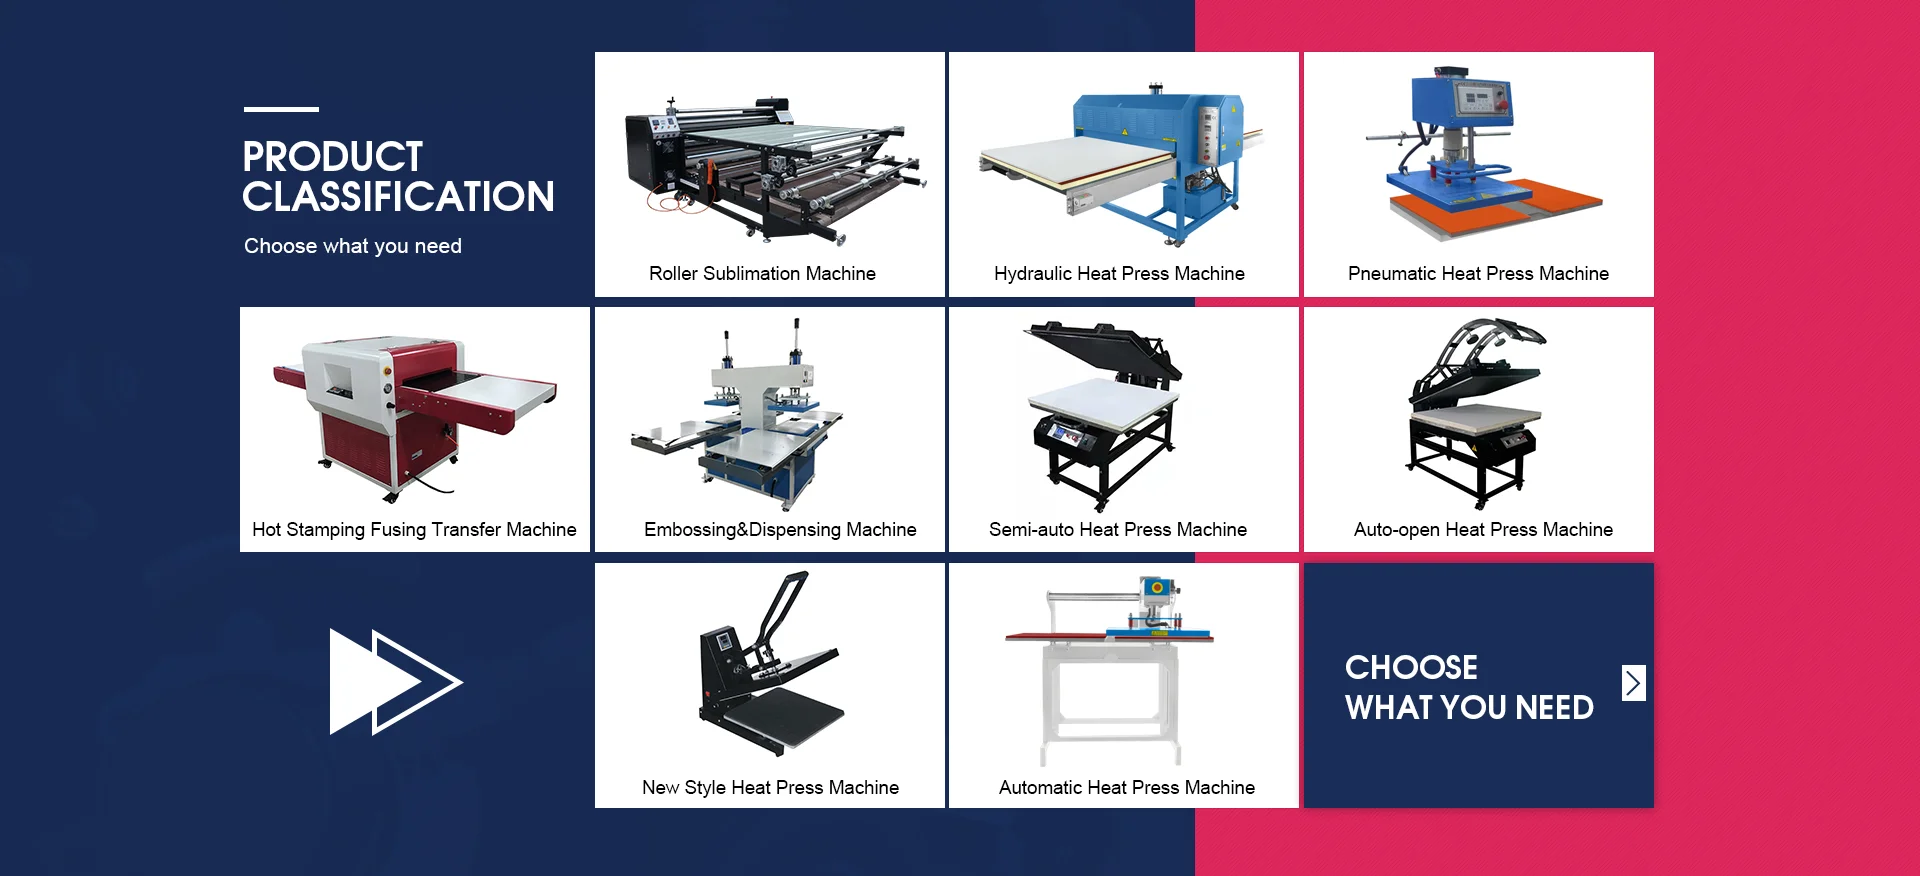 Guangzhou Jiangchuan Printing Equipment Co Ltd Heat Press